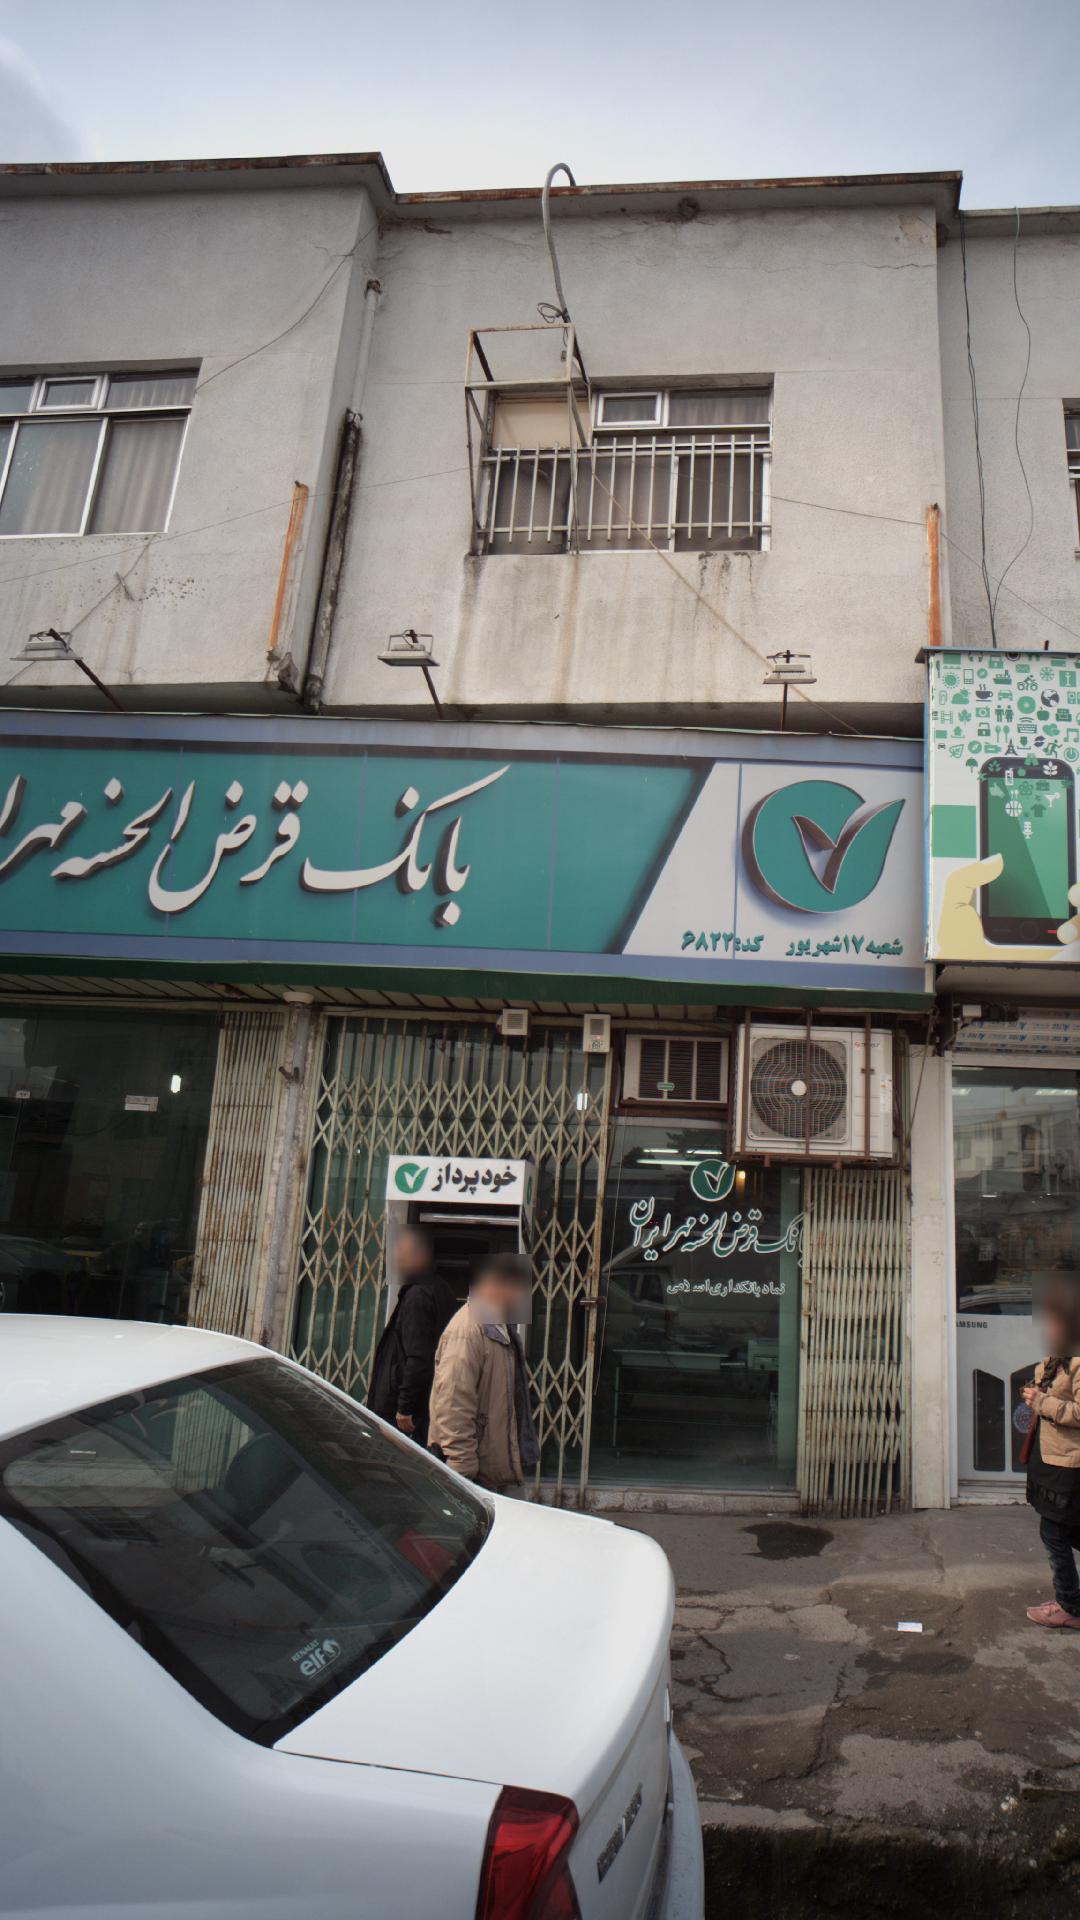 خودپرداز بانک قرض الحسنه مهر ایران